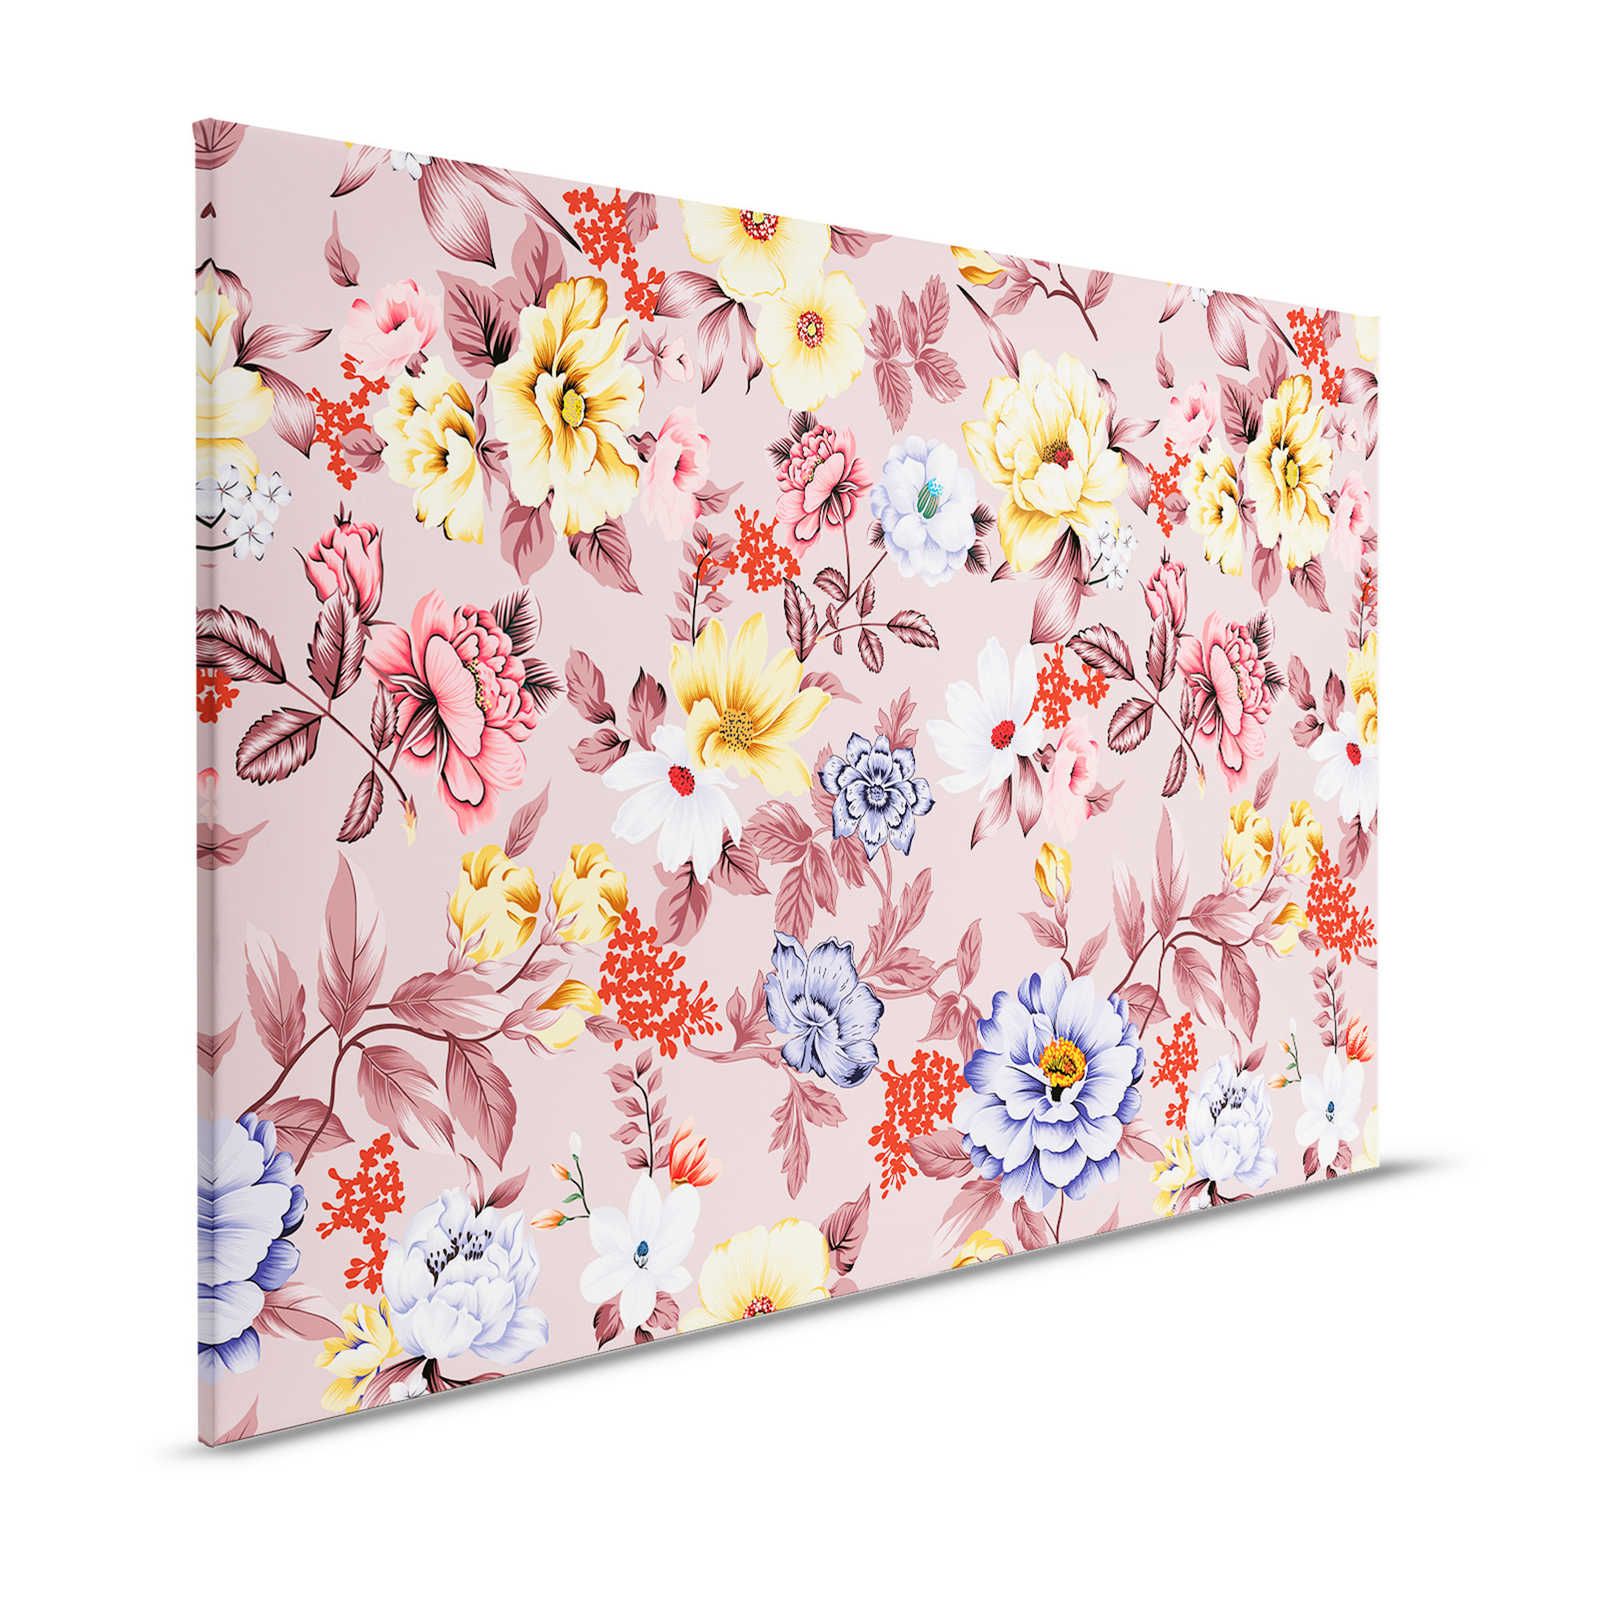 Leinwand floral mit Blüten und Blättern – 120 cm x 80 cm
